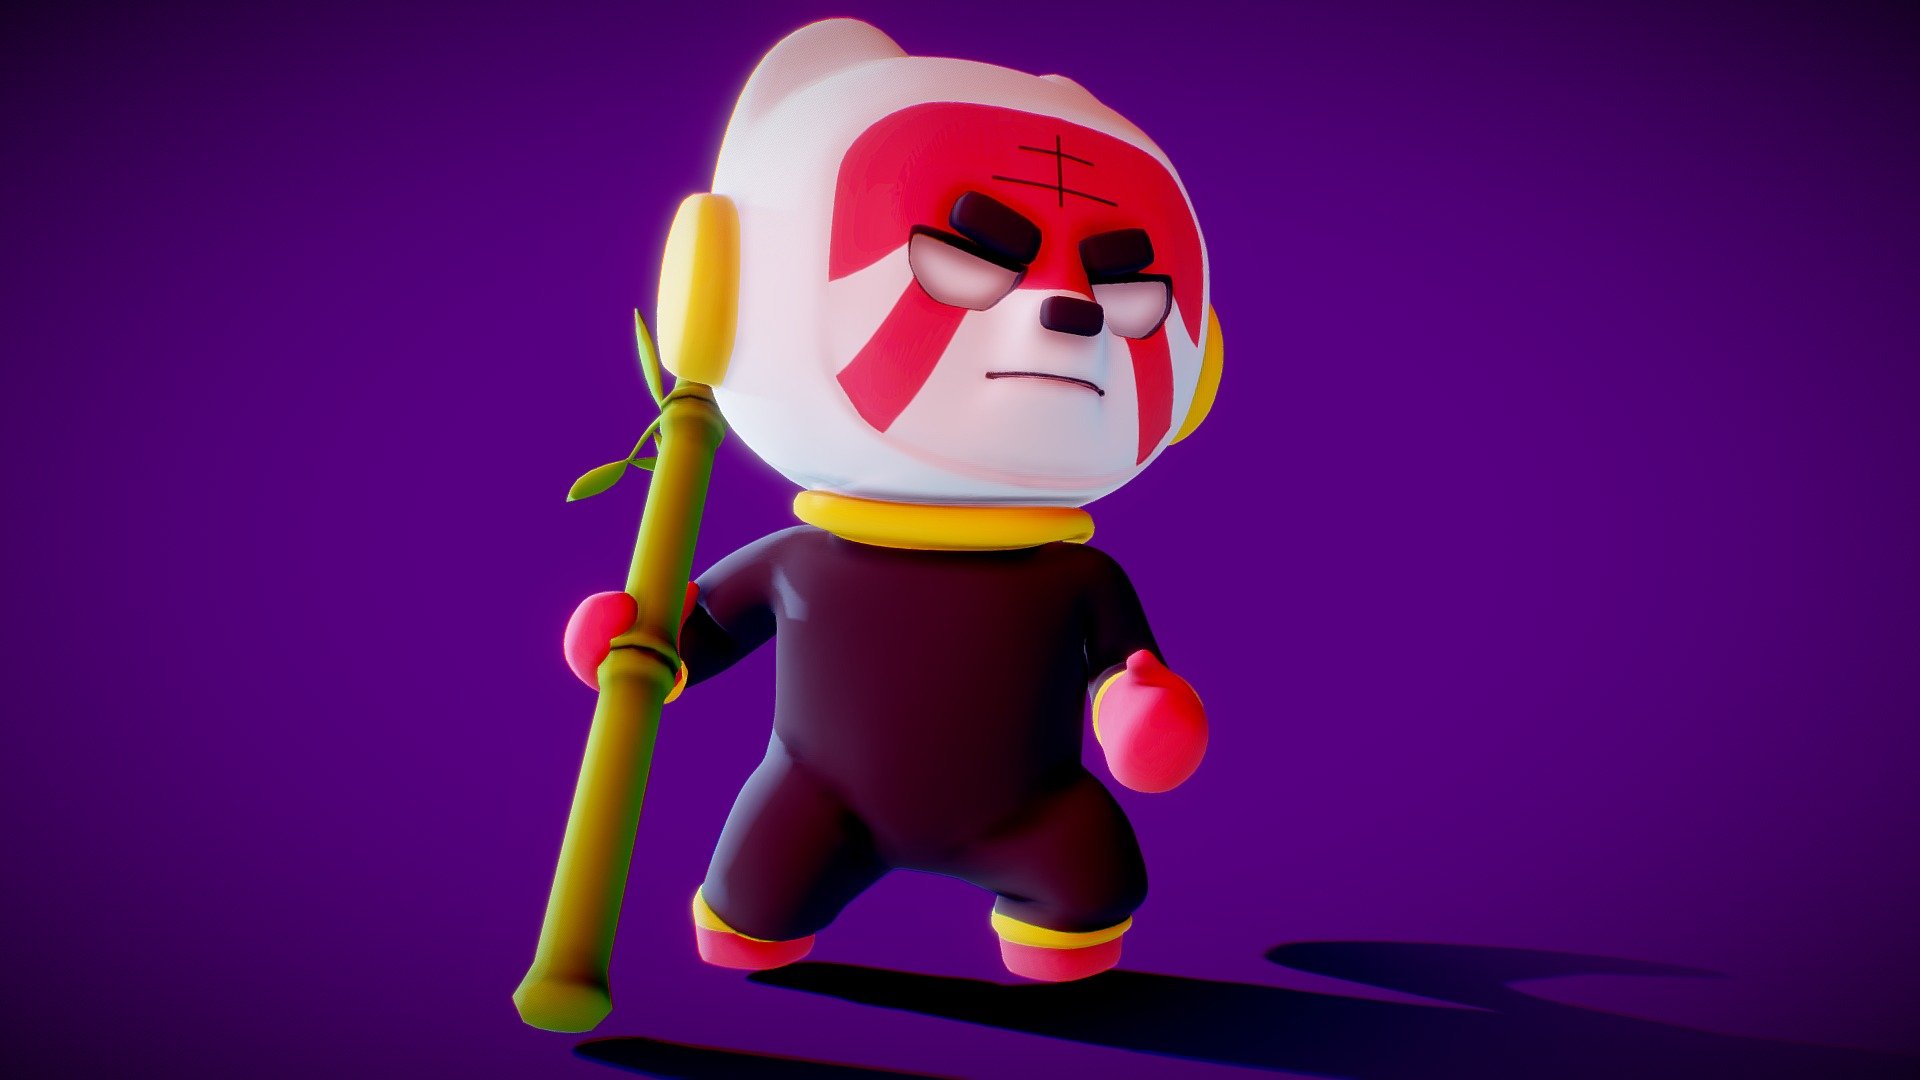 little red panda astronaut - red panda - 3D model by trsdz 3d model